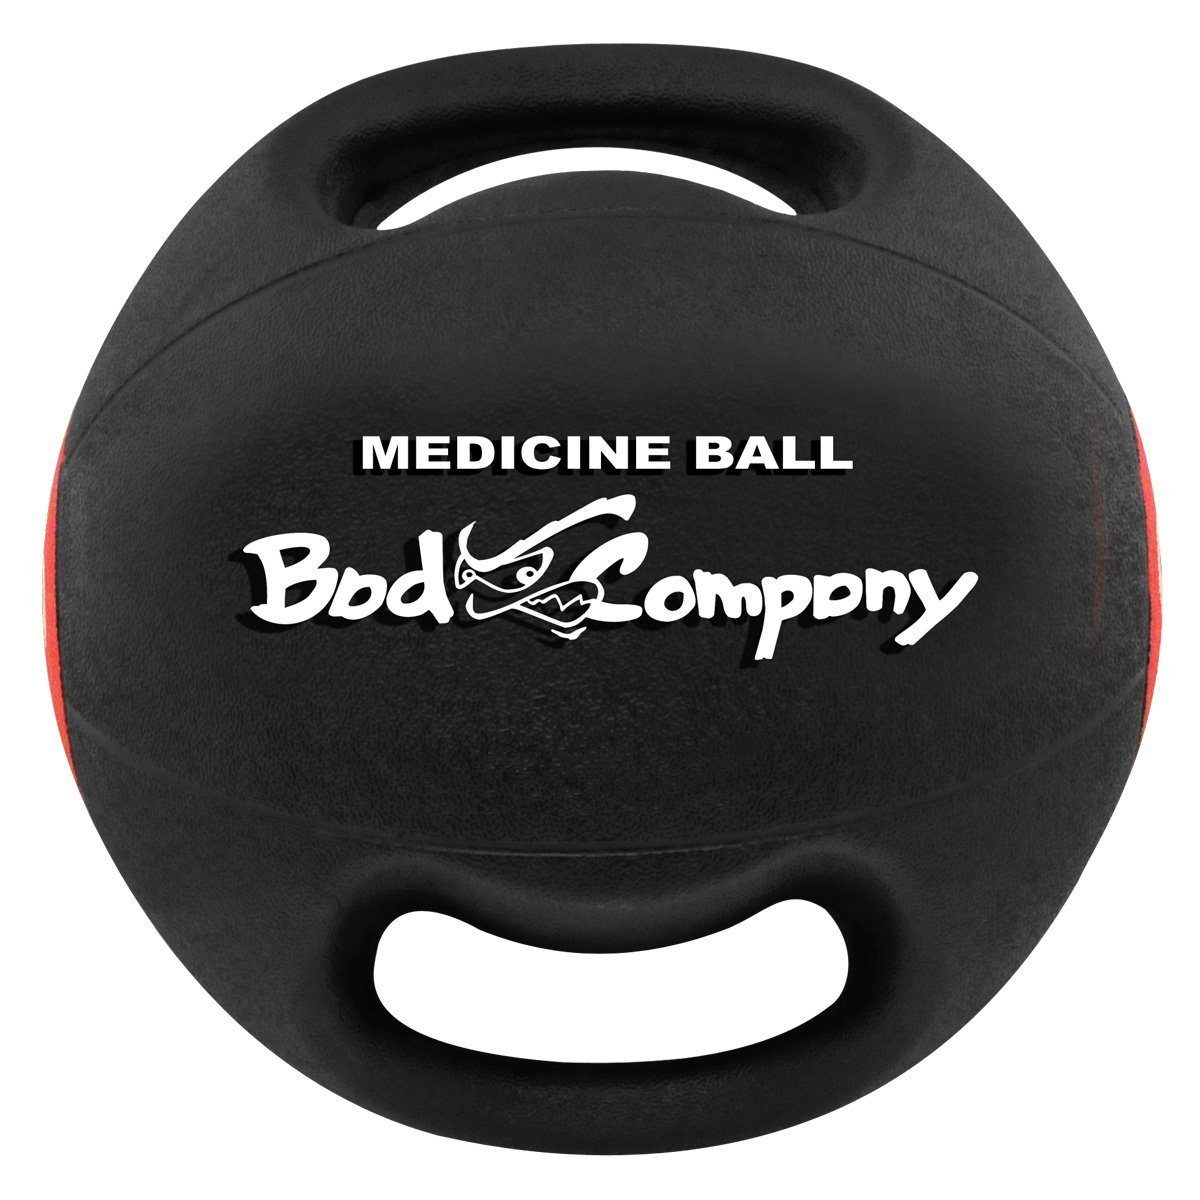 Medizinball Company Bad